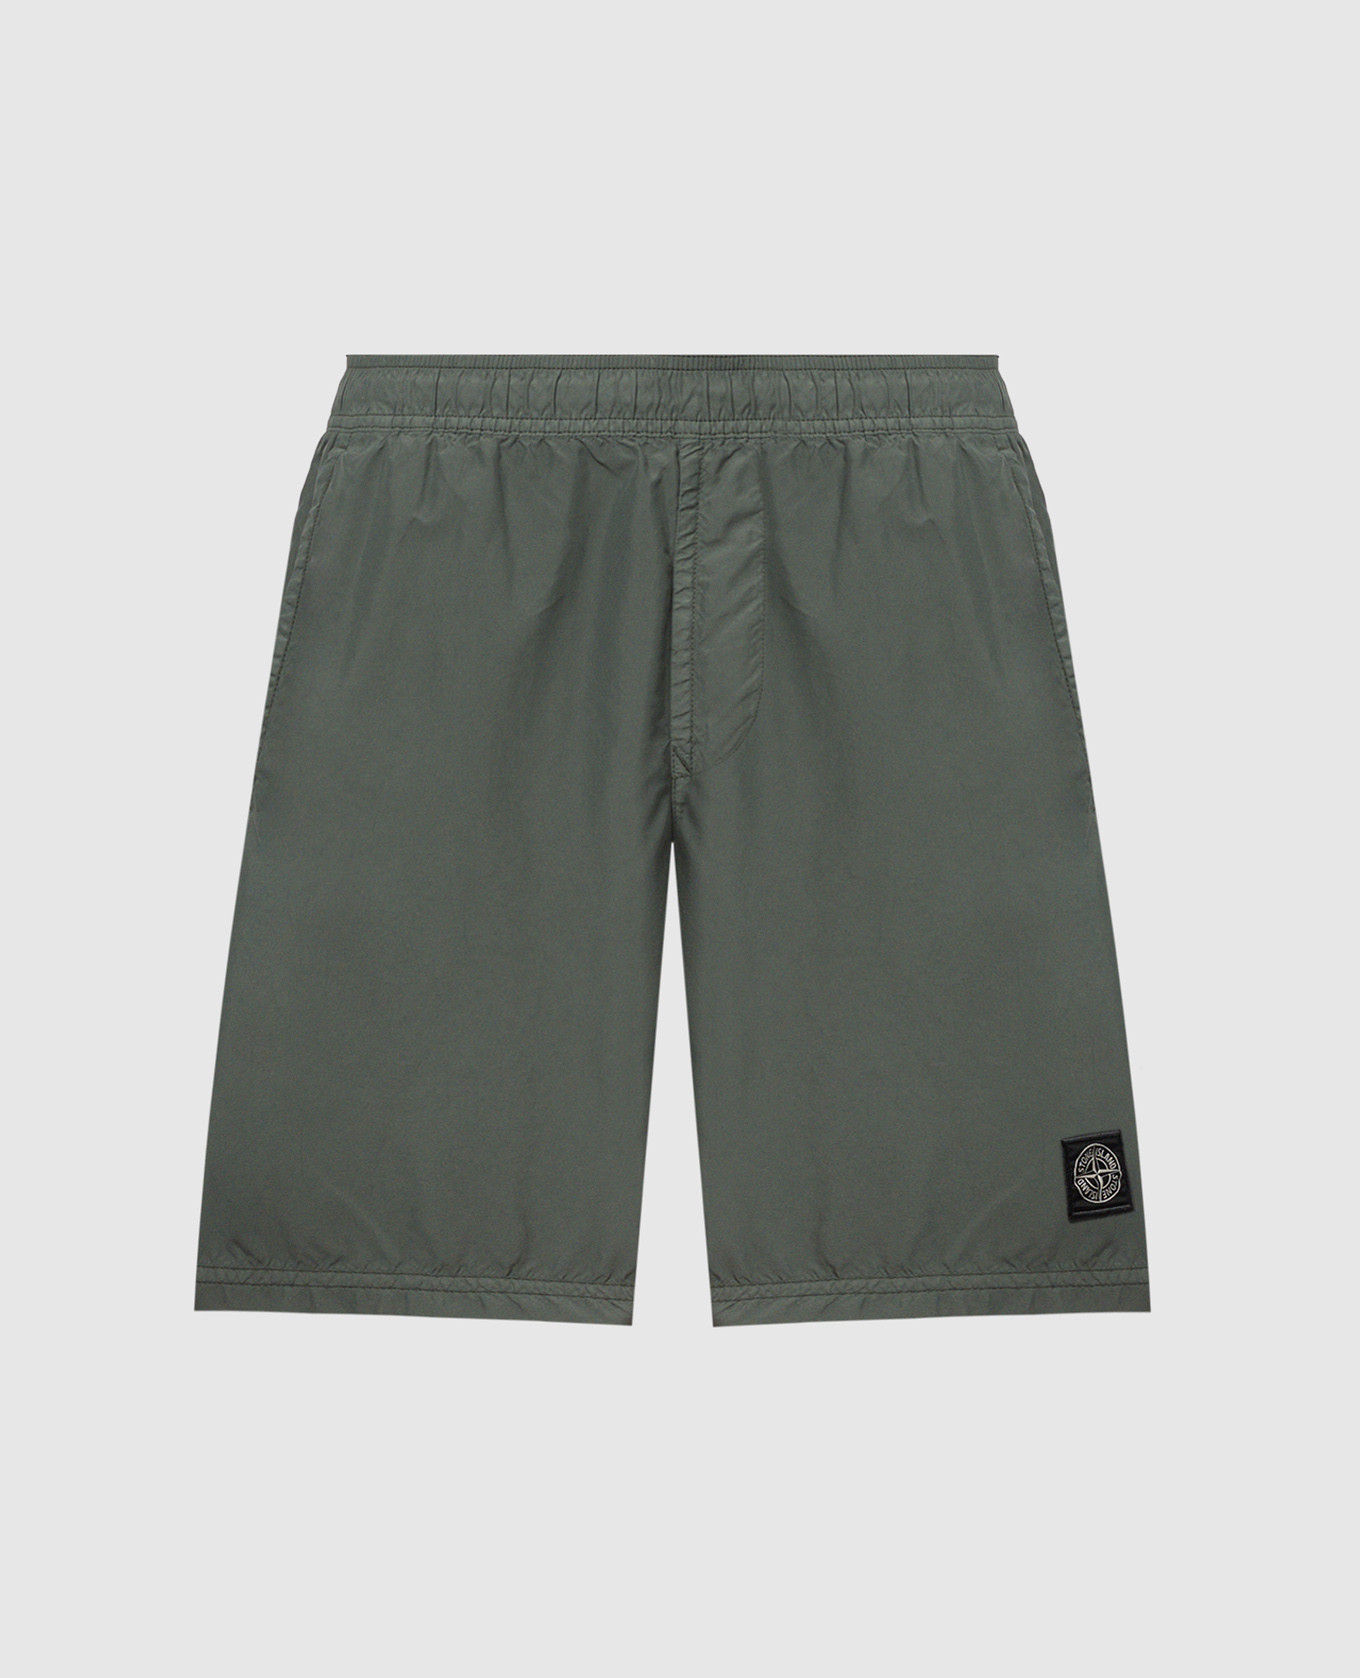 Pantalón corto verde con logo.